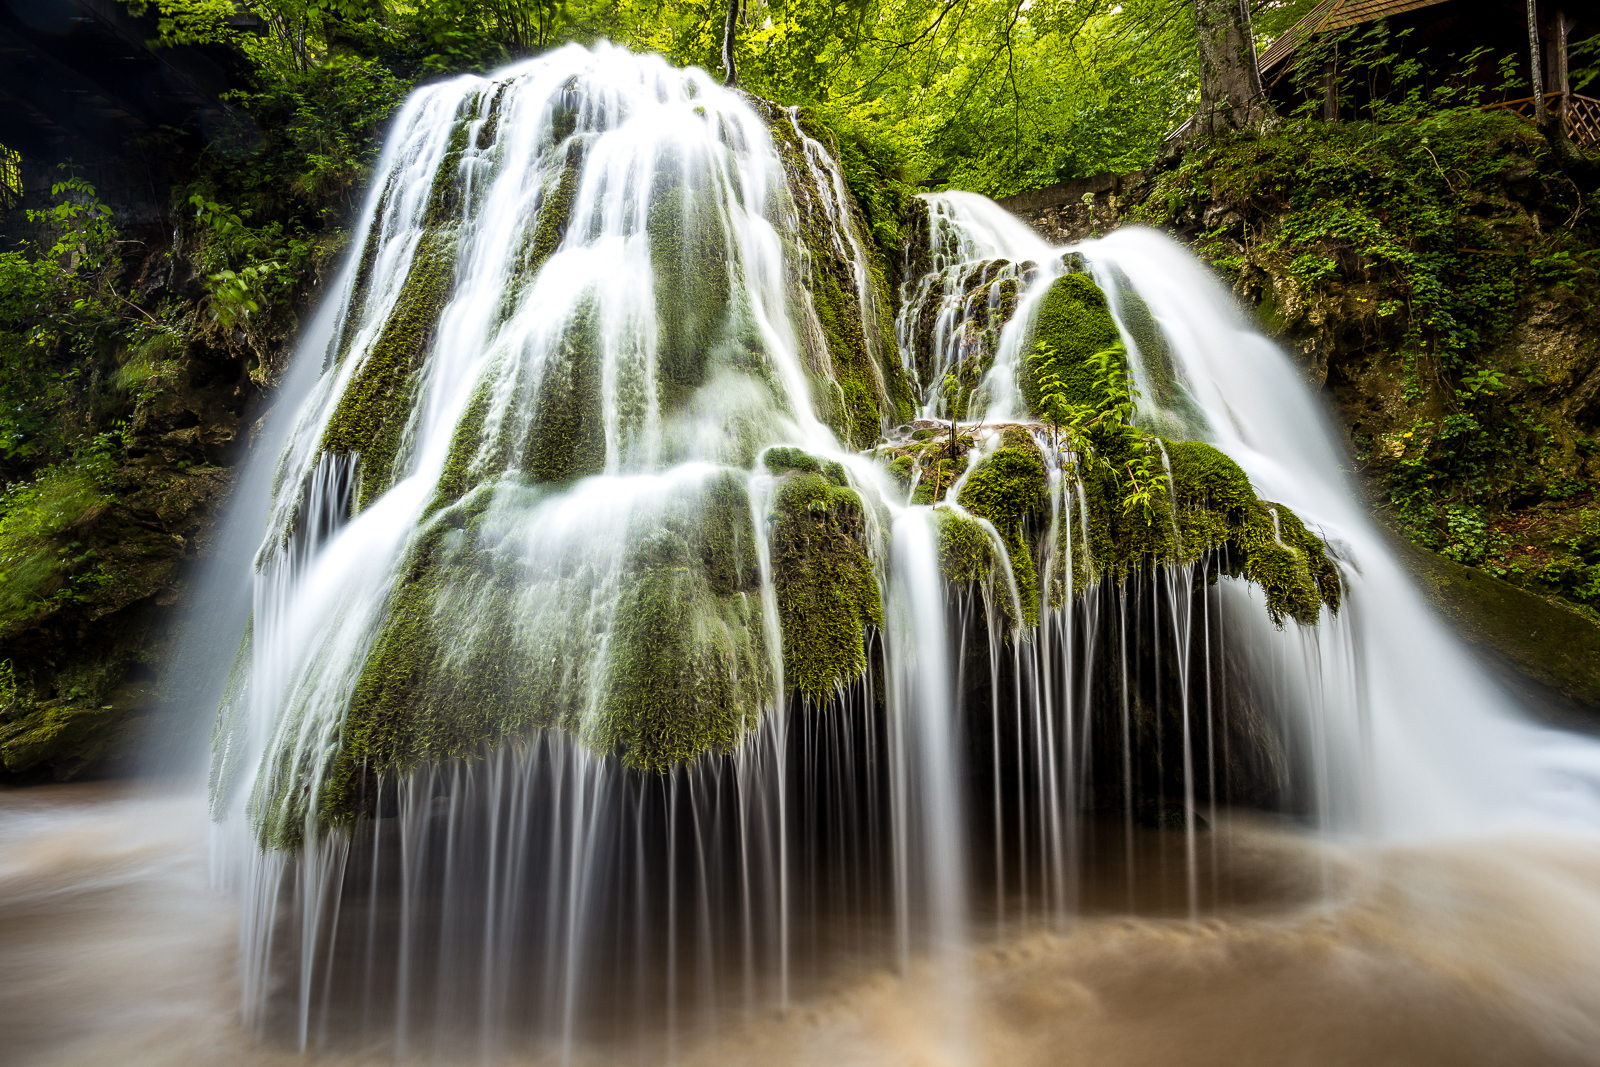 望一眼就爱上的地方—罗马尼亚比格尔瀑布